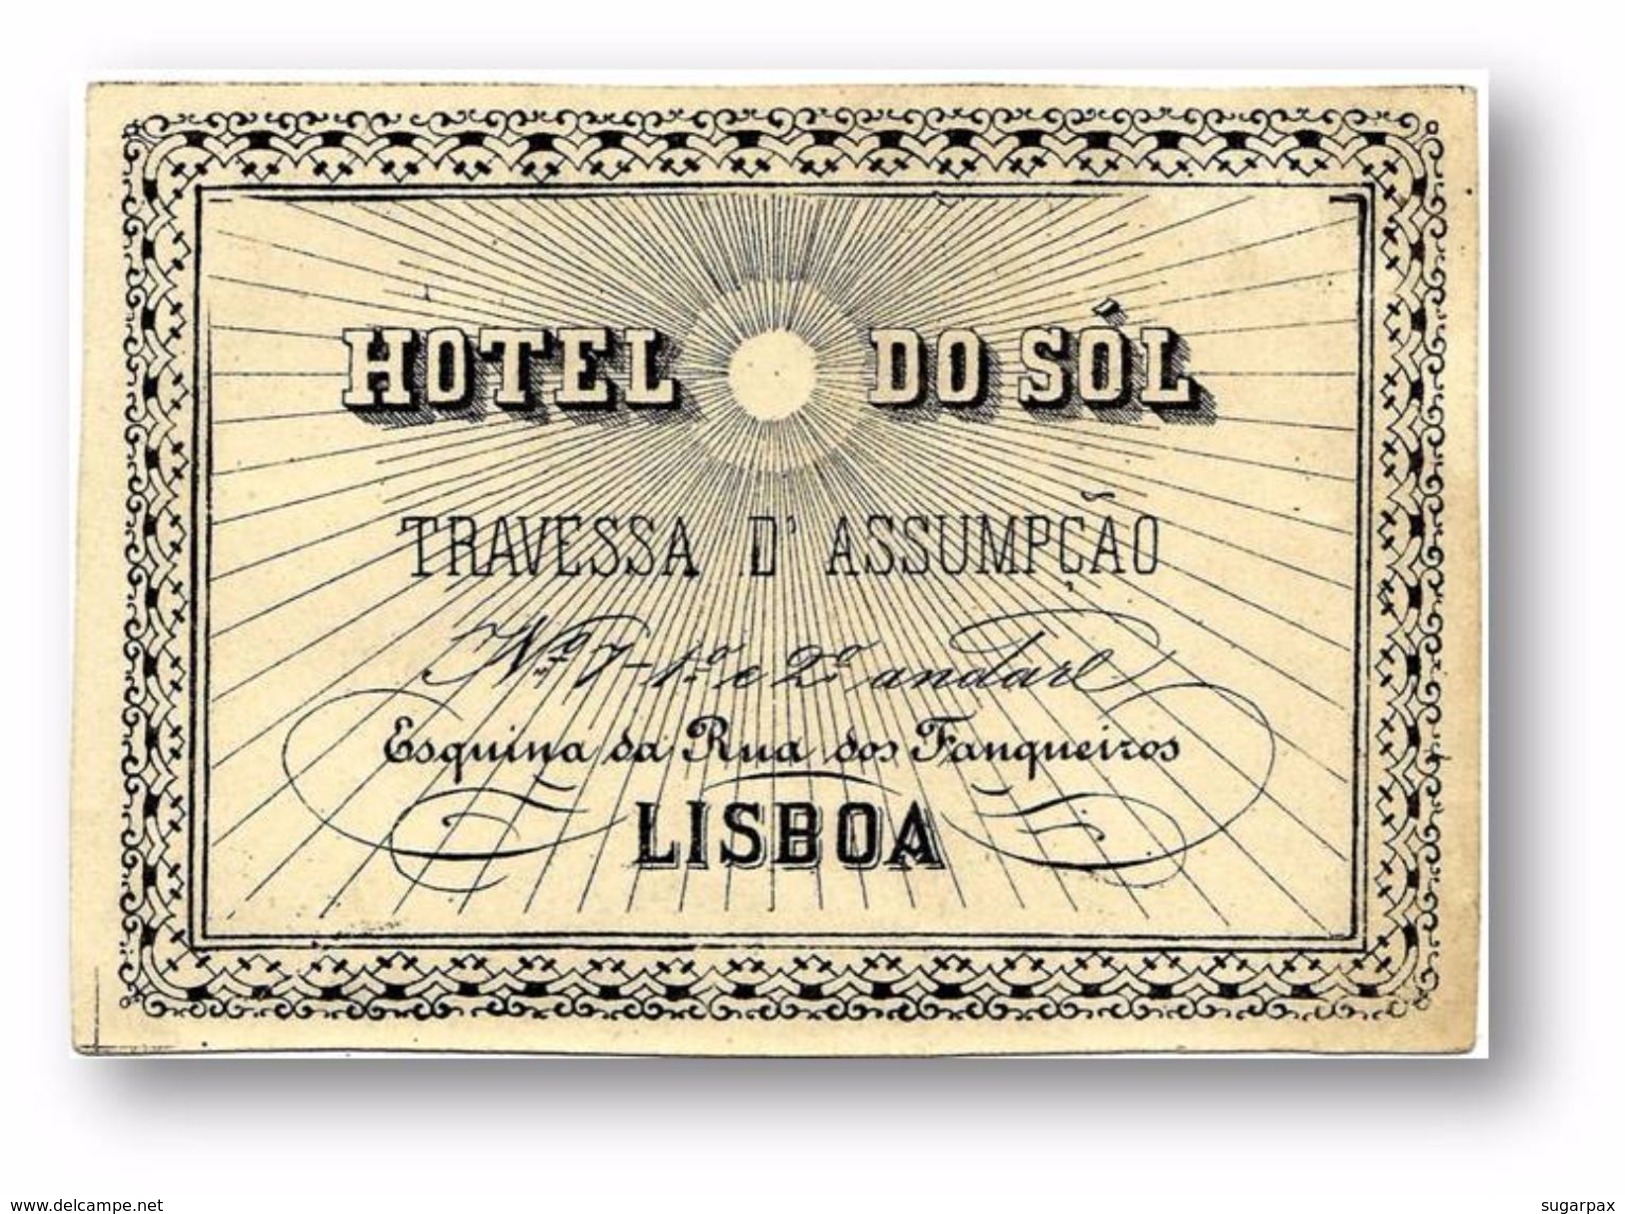 LISBOA - HOTEL Do SOL - Travessa D' Assumpção / Esquina Da Rua Dos Fanqueiros ( 11,4 X 7,8 Cm ) - PORTUGAL - Hotel Labels